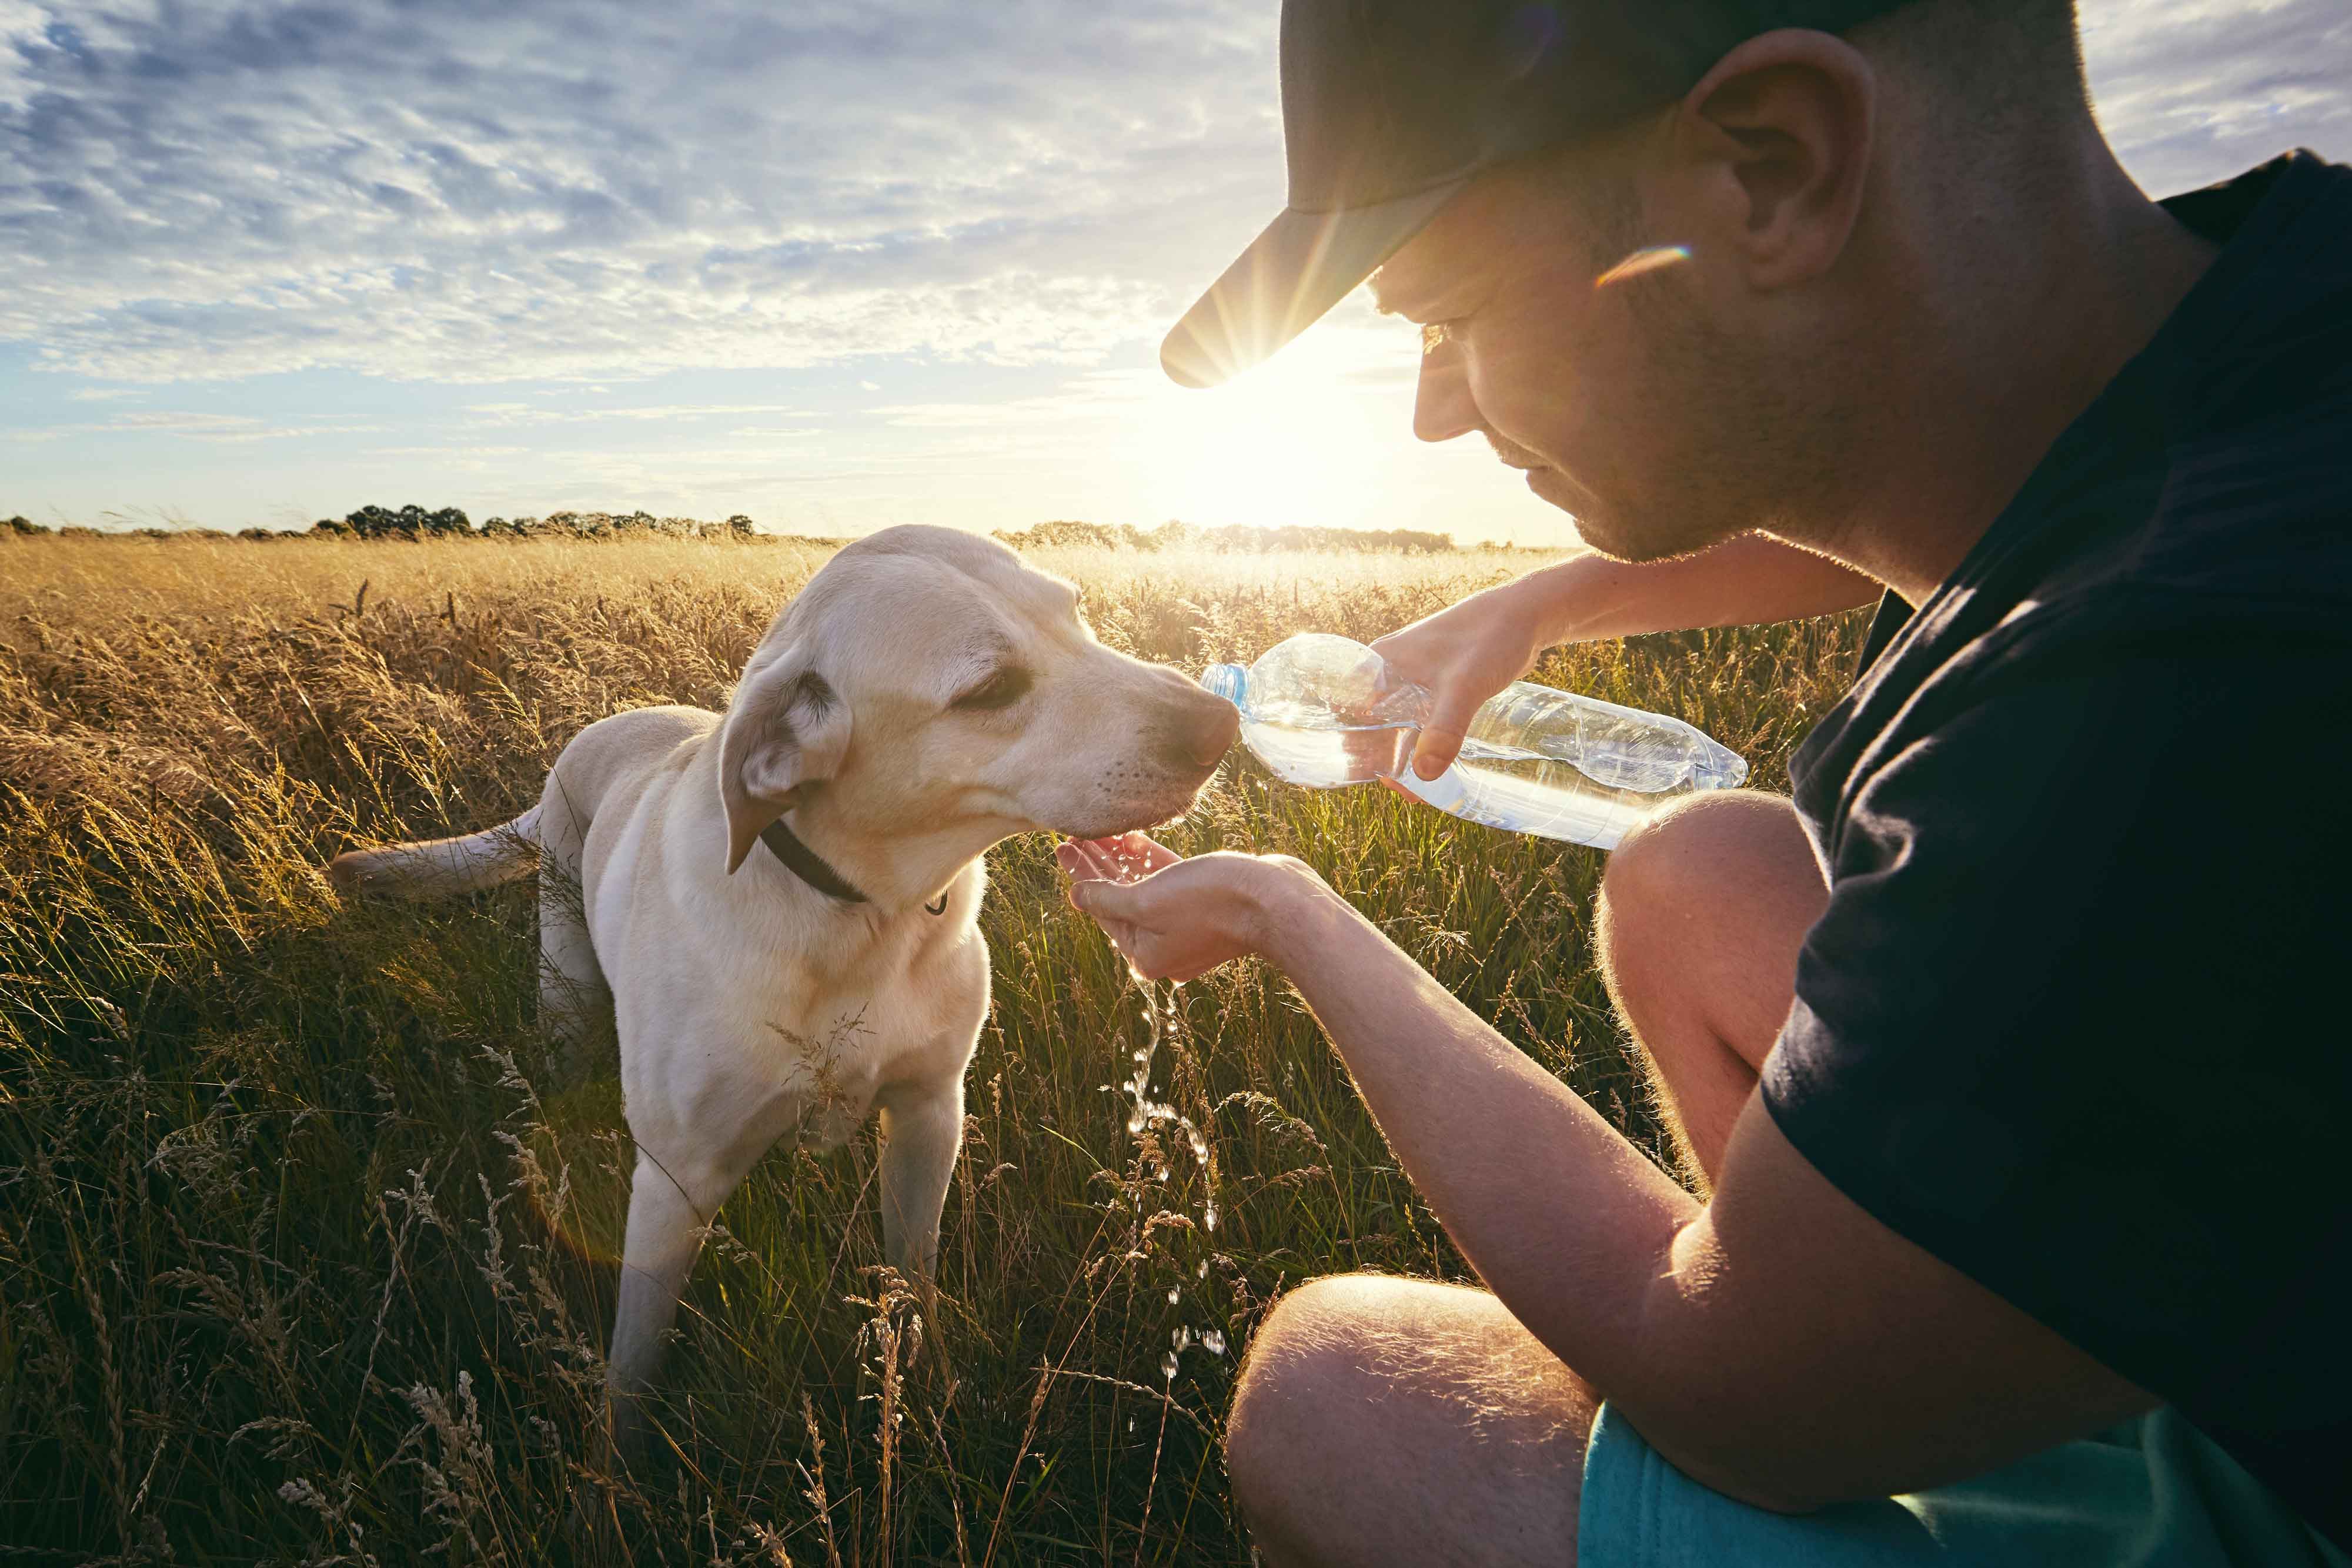 Drinking dog from a water bottle in a grain field